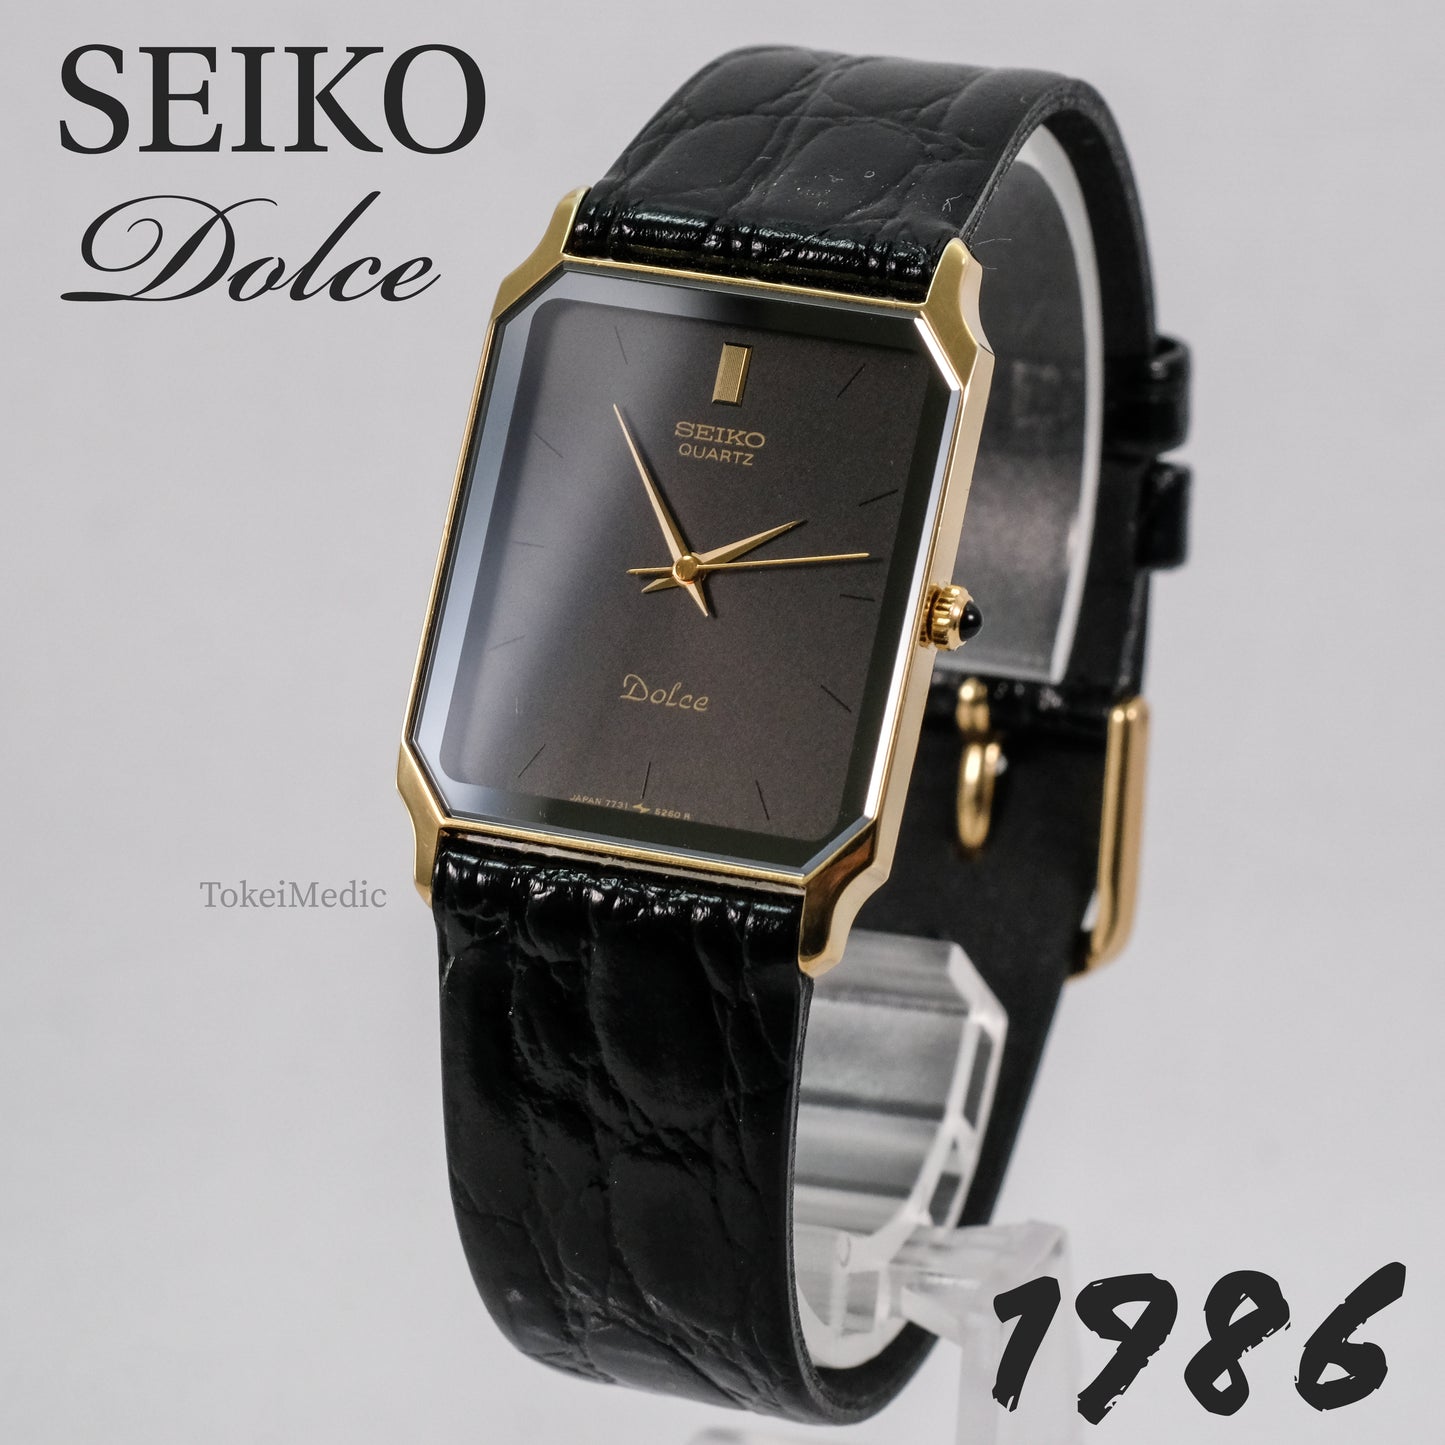 1986 Seiko Dolce 7731-5220